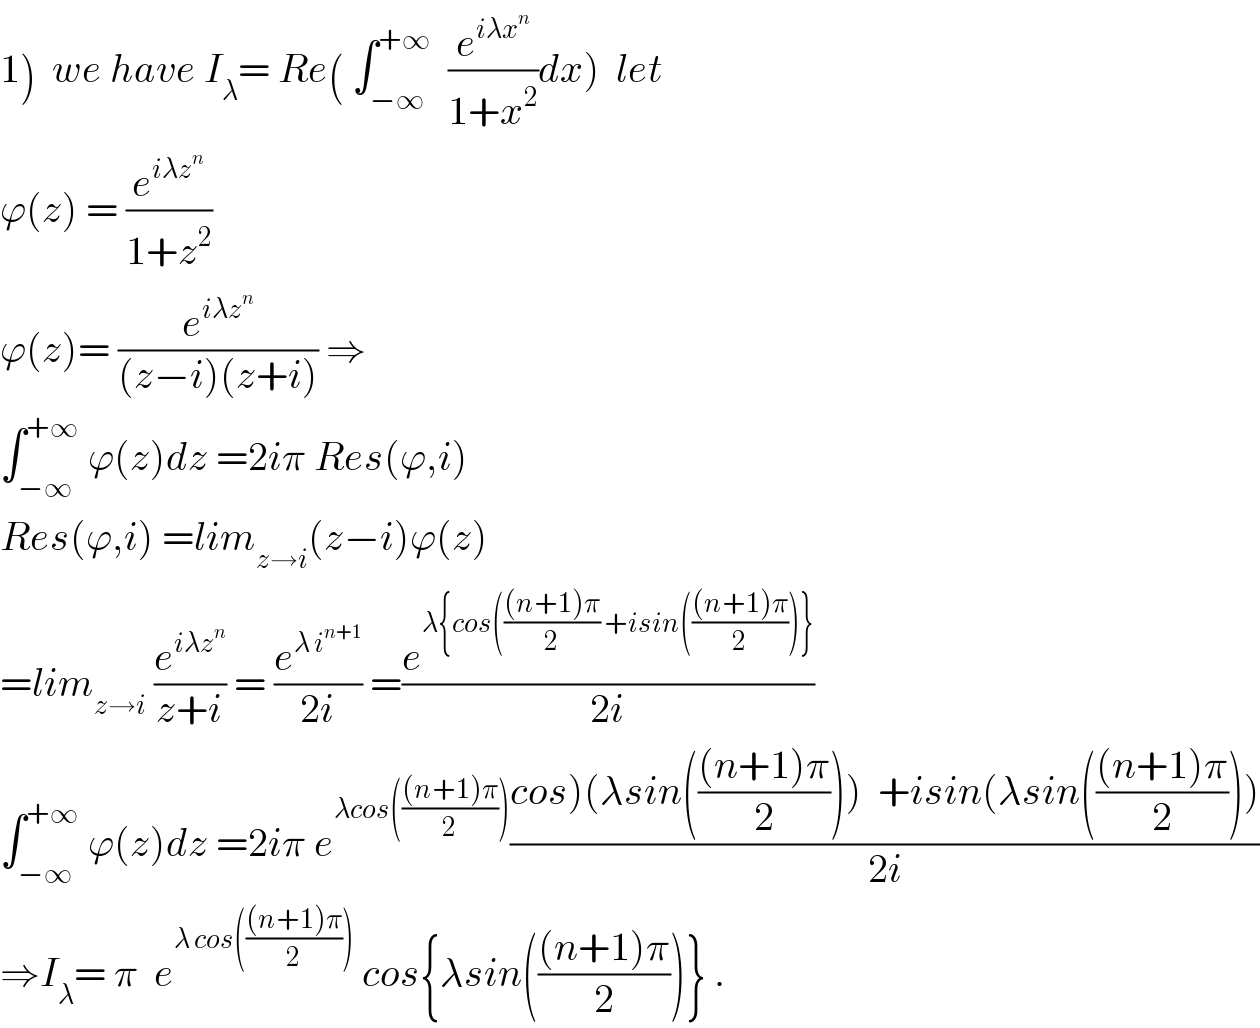 1)  we have I_λ = Re( ∫_(−∞) ^(+∞)   (e^(iλx^n ) /(1+x^2 ))dx)  let  ϕ(z) = (e^(iλz^n ) /(1+z^2 ))  ϕ(z)= (e^(iλz^n ) /((z−i)(z+i))) ⇒  ∫_(−∞) ^(+∞)  ϕ(z)dz =2iπ Res(ϕ,i)  Res(ϕ,i) =lim_(z→i) (z−i)ϕ(z)  =lim_(z→i)  (e^(iλz^n ) /(z+i)) = (e^(λ i^(n+1) ) /(2i)) =(e^(λ{cos((((n+1)π)/2) +isin((((n+1)π)/2))}) /(2i))  ∫_(−∞) ^(+∞)  ϕ(z)dz =2iπ e^(λcos((((n+1)π)/2))) ((cos)(λsin((((n+1)π)/2)))  +isin(λsin((((n+1)π)/2))))/(2i))  ⇒I_λ = π  e^(λ cos((((n+1)π)/2)))  cos{λsin((((n+1)π)/2))} .  